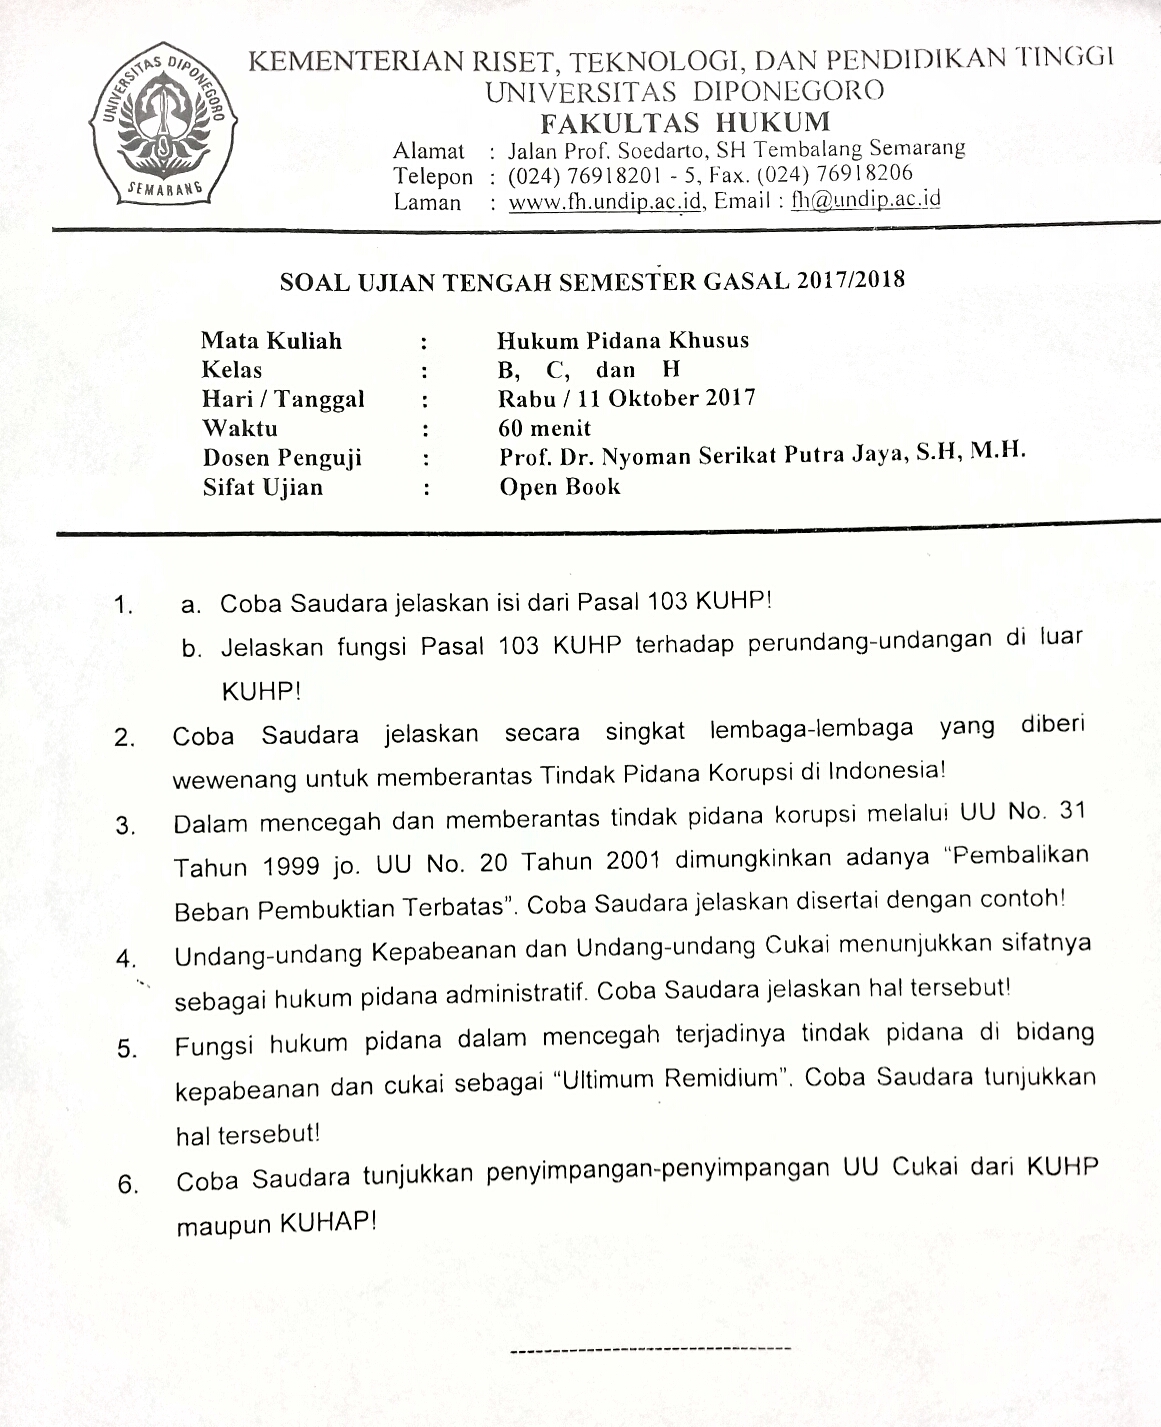 Contoh Soal Tes Masuk Fakultas Hukum - Download TES ...